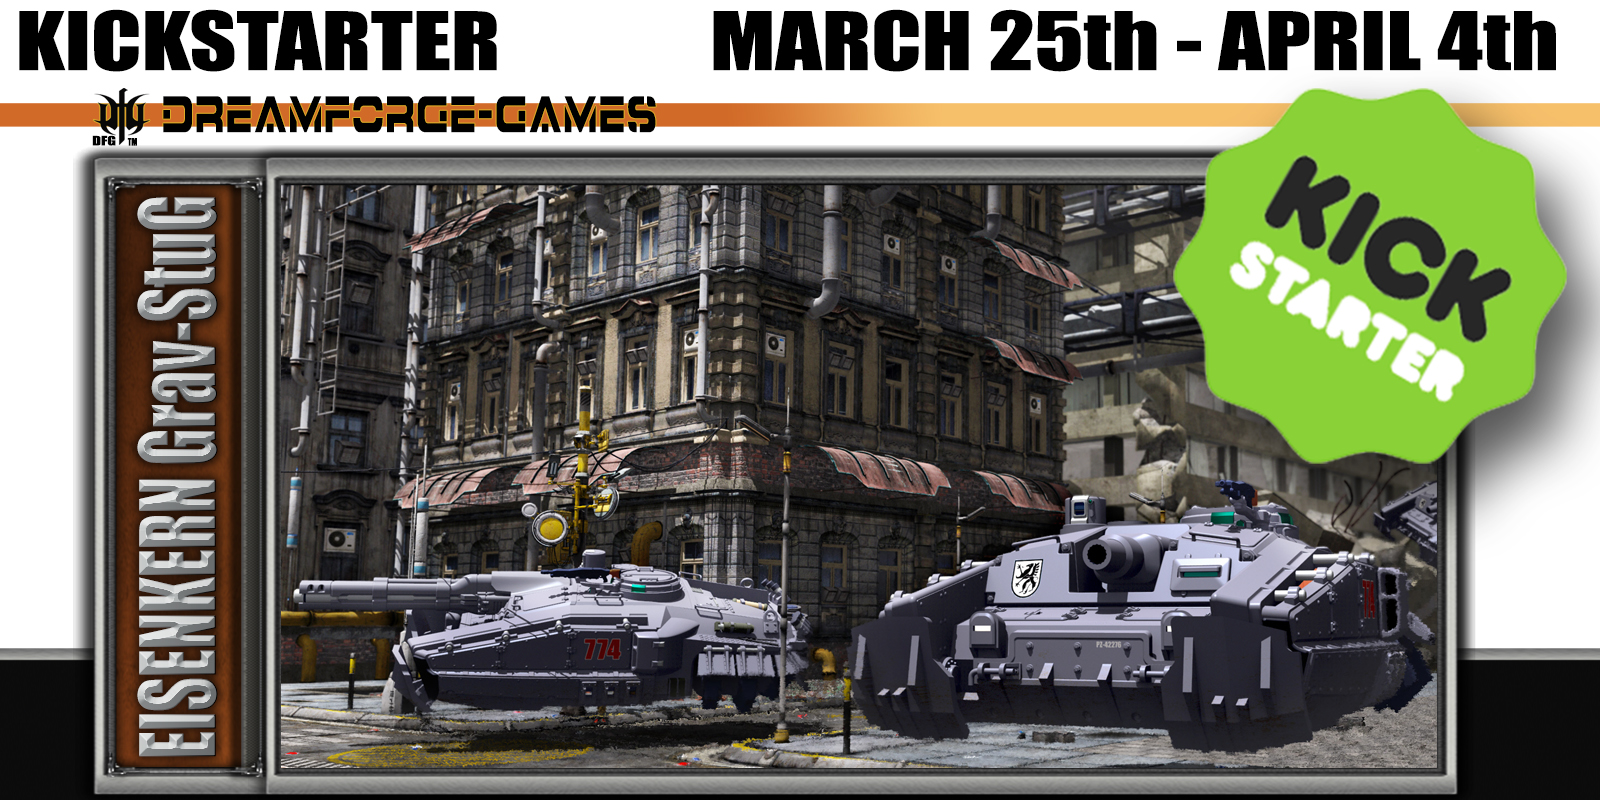 DreamForge-Games  ~Eisenkern Grav-StuG (A plastic model kit) March 25th!